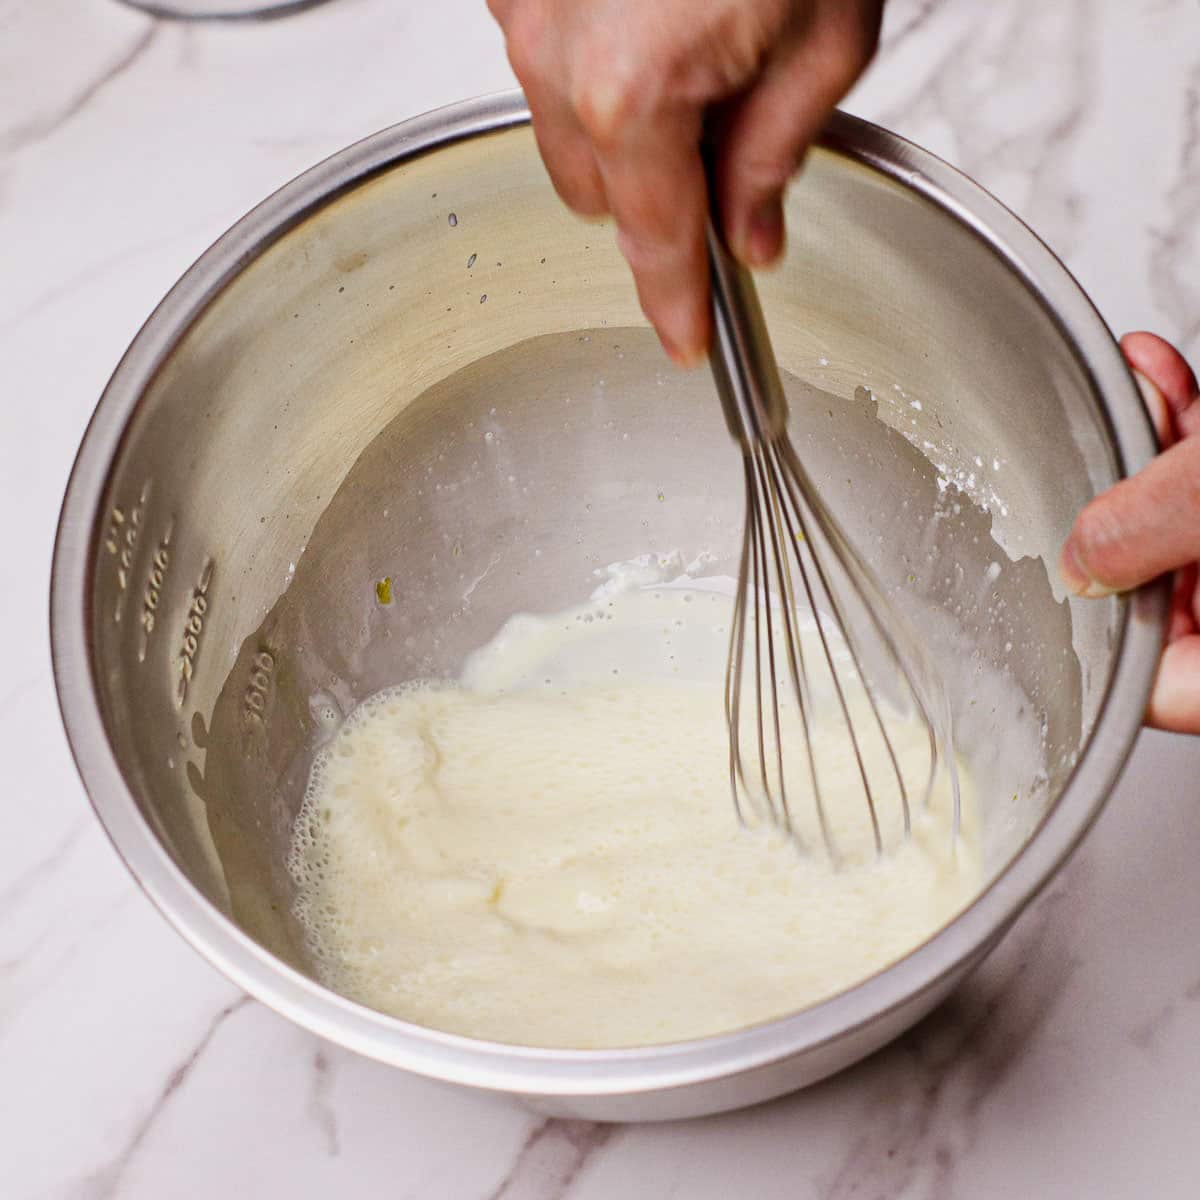 Step 1: Whisk custard tart ingredients together except vanilla.